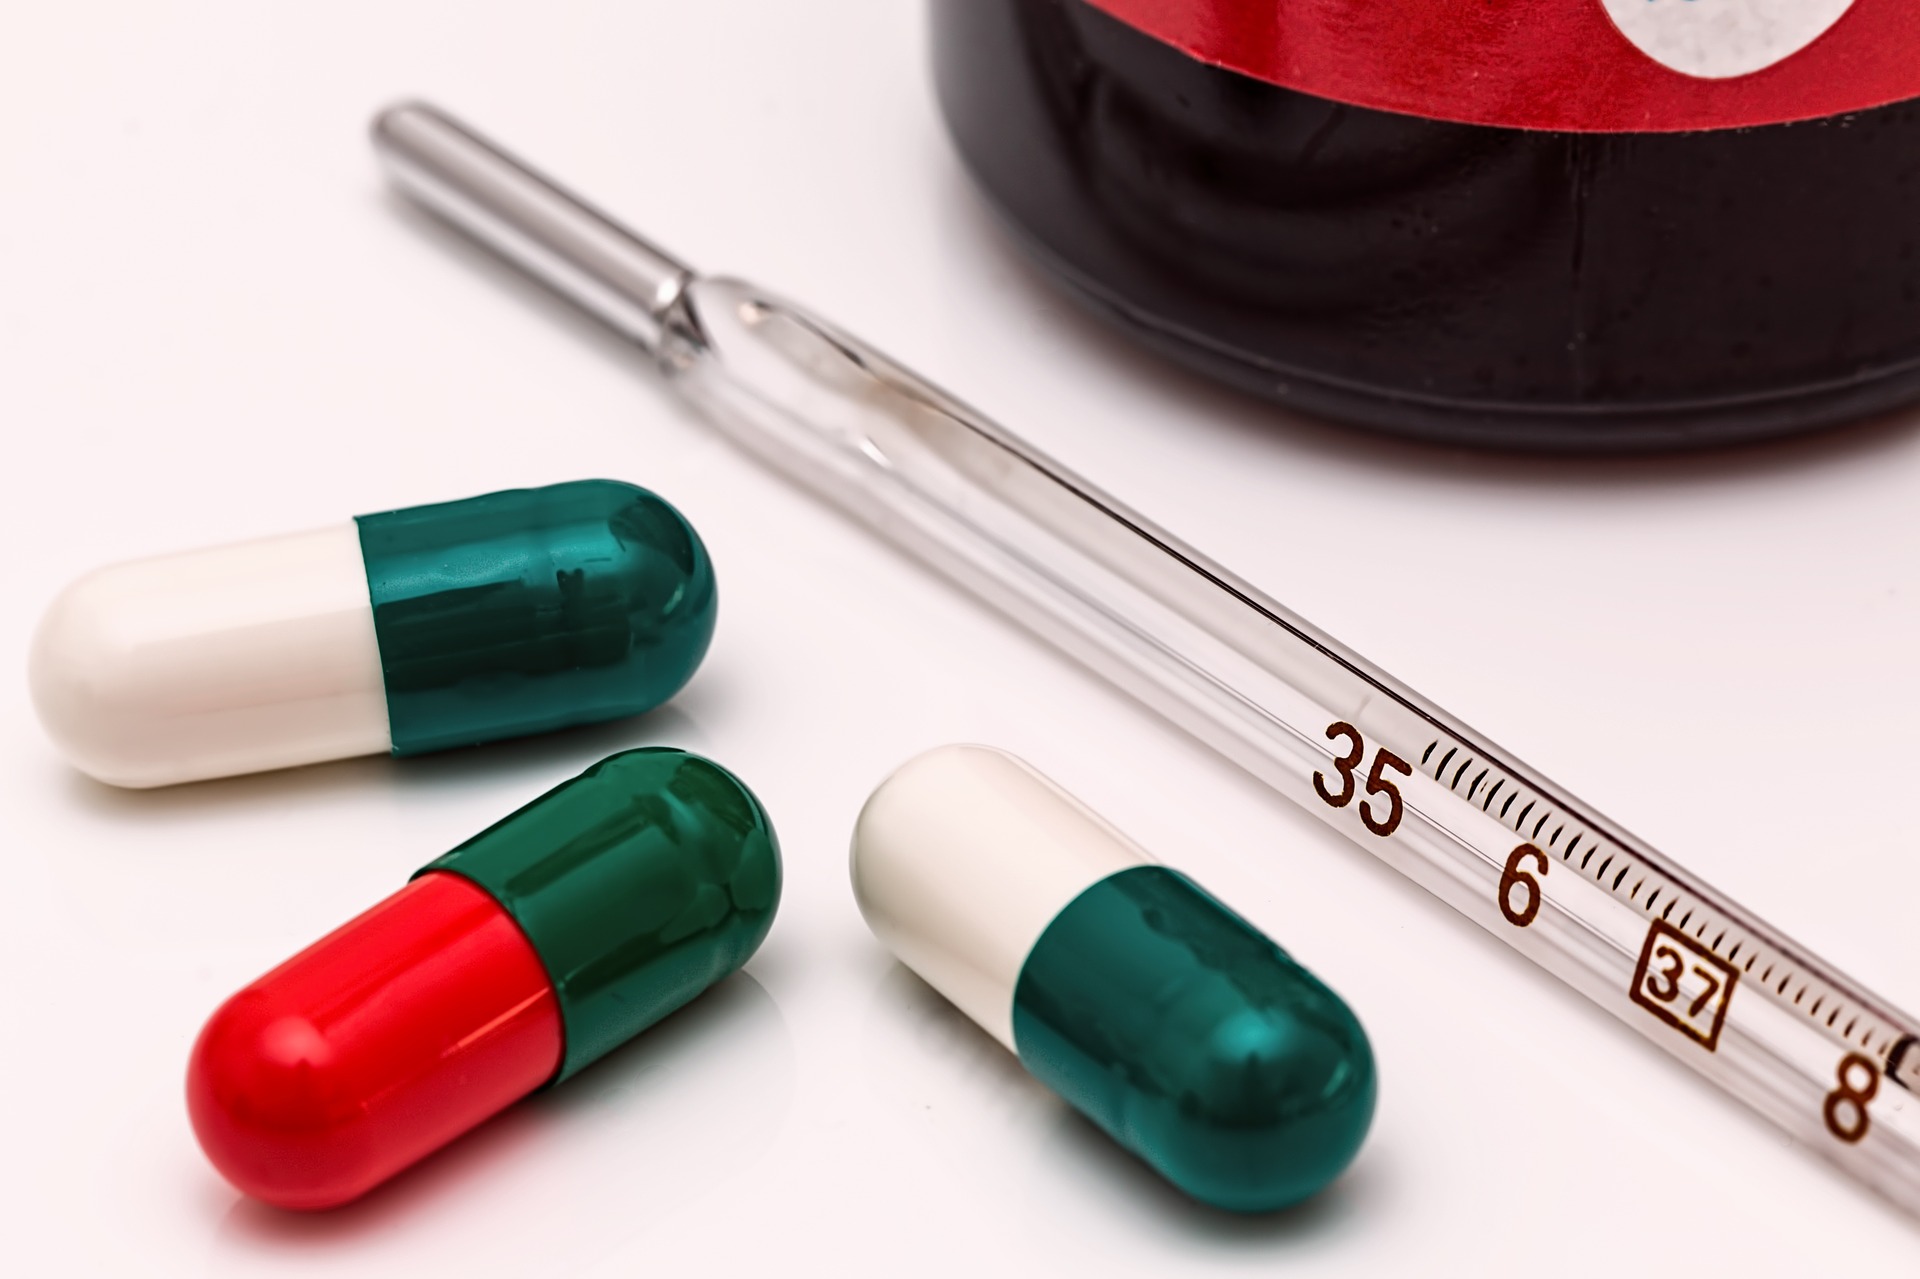 antibiotice medicamente - sfatulparintilor.ro - pixabay_com